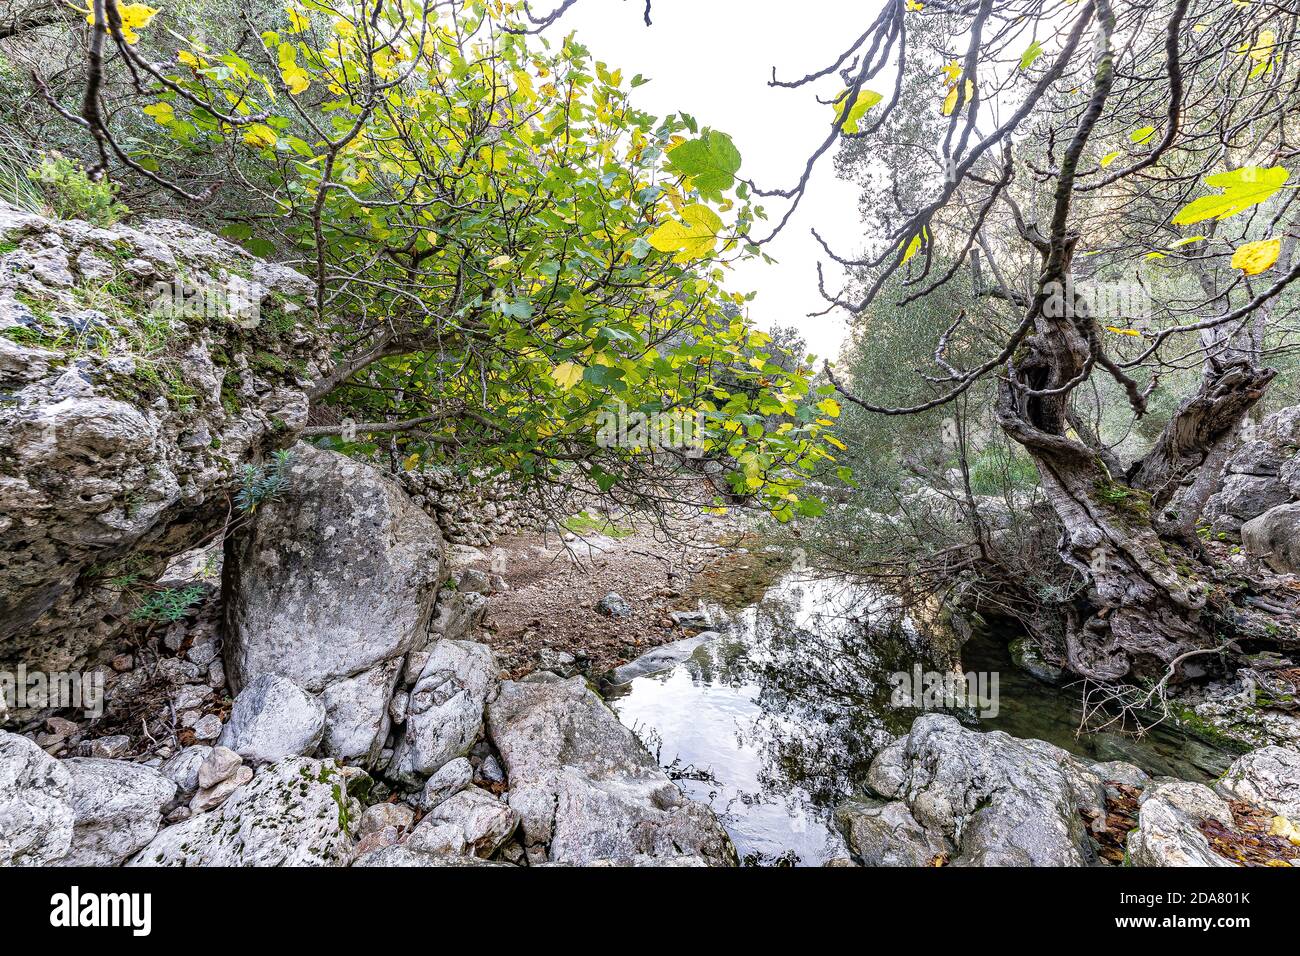 Foto del burrone di Biniaraix, nella città di Sóller, uno dei percorsi escursionistici più belli e spettacolari di Maiorca, nelle Isole Baleari. Foto Stock